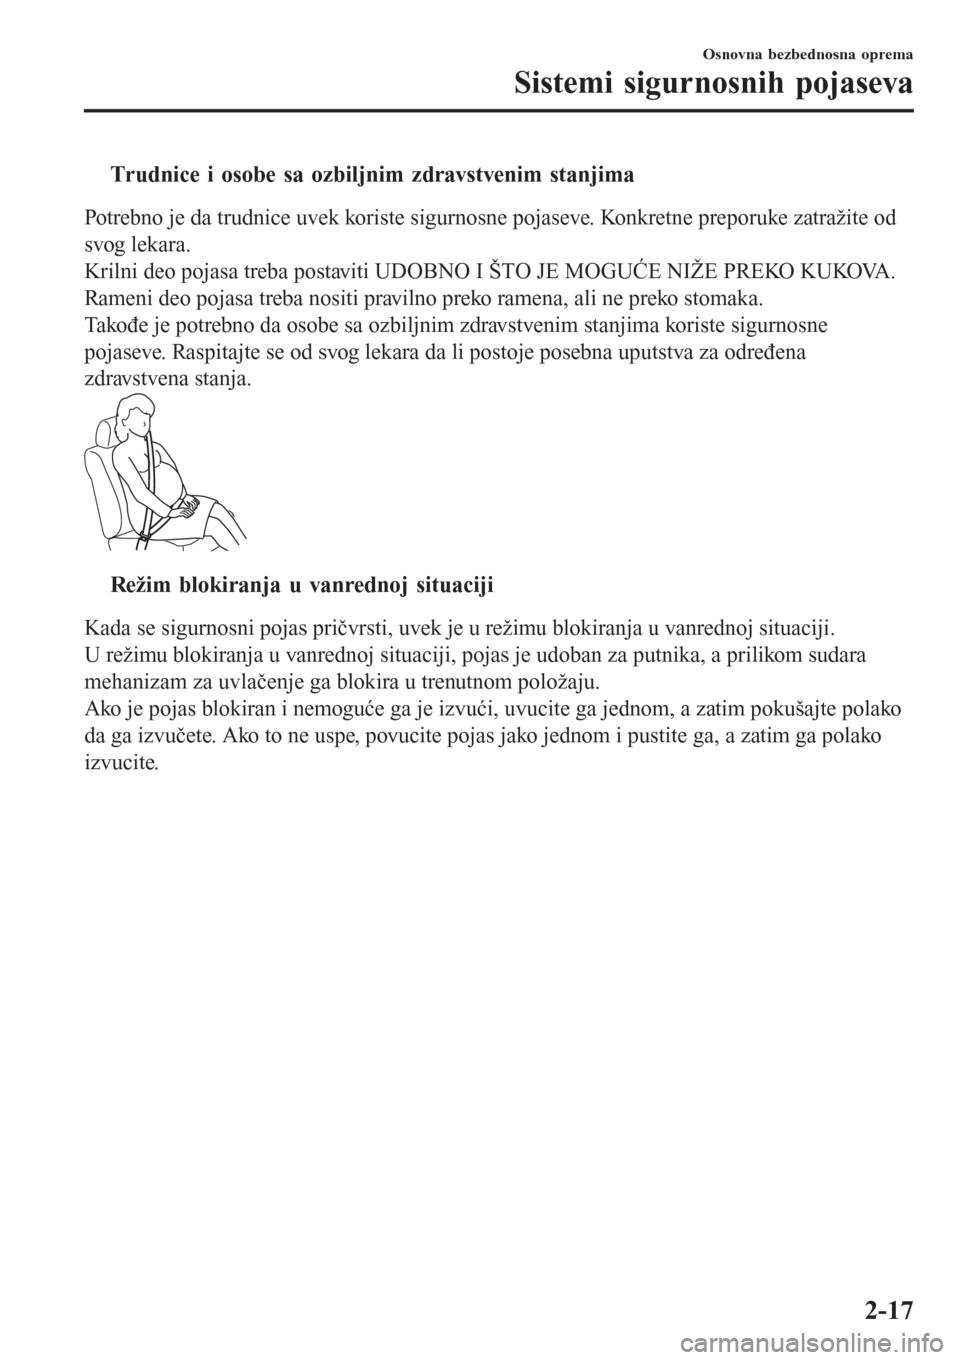 MAZDA MODEL 3 HATCHBACK 2015  Korisničko uputstvo (in Serbian) tTrudnice i osobe sa ozbiljnim zdravstvenim stanjima
Potrebno je da trudnice uvek koriste sigurnosne pojaseve. Konkretne preporuke zatražite od
svog lekara.
Krilni deo pojasa treba postaviti UDOBNO I